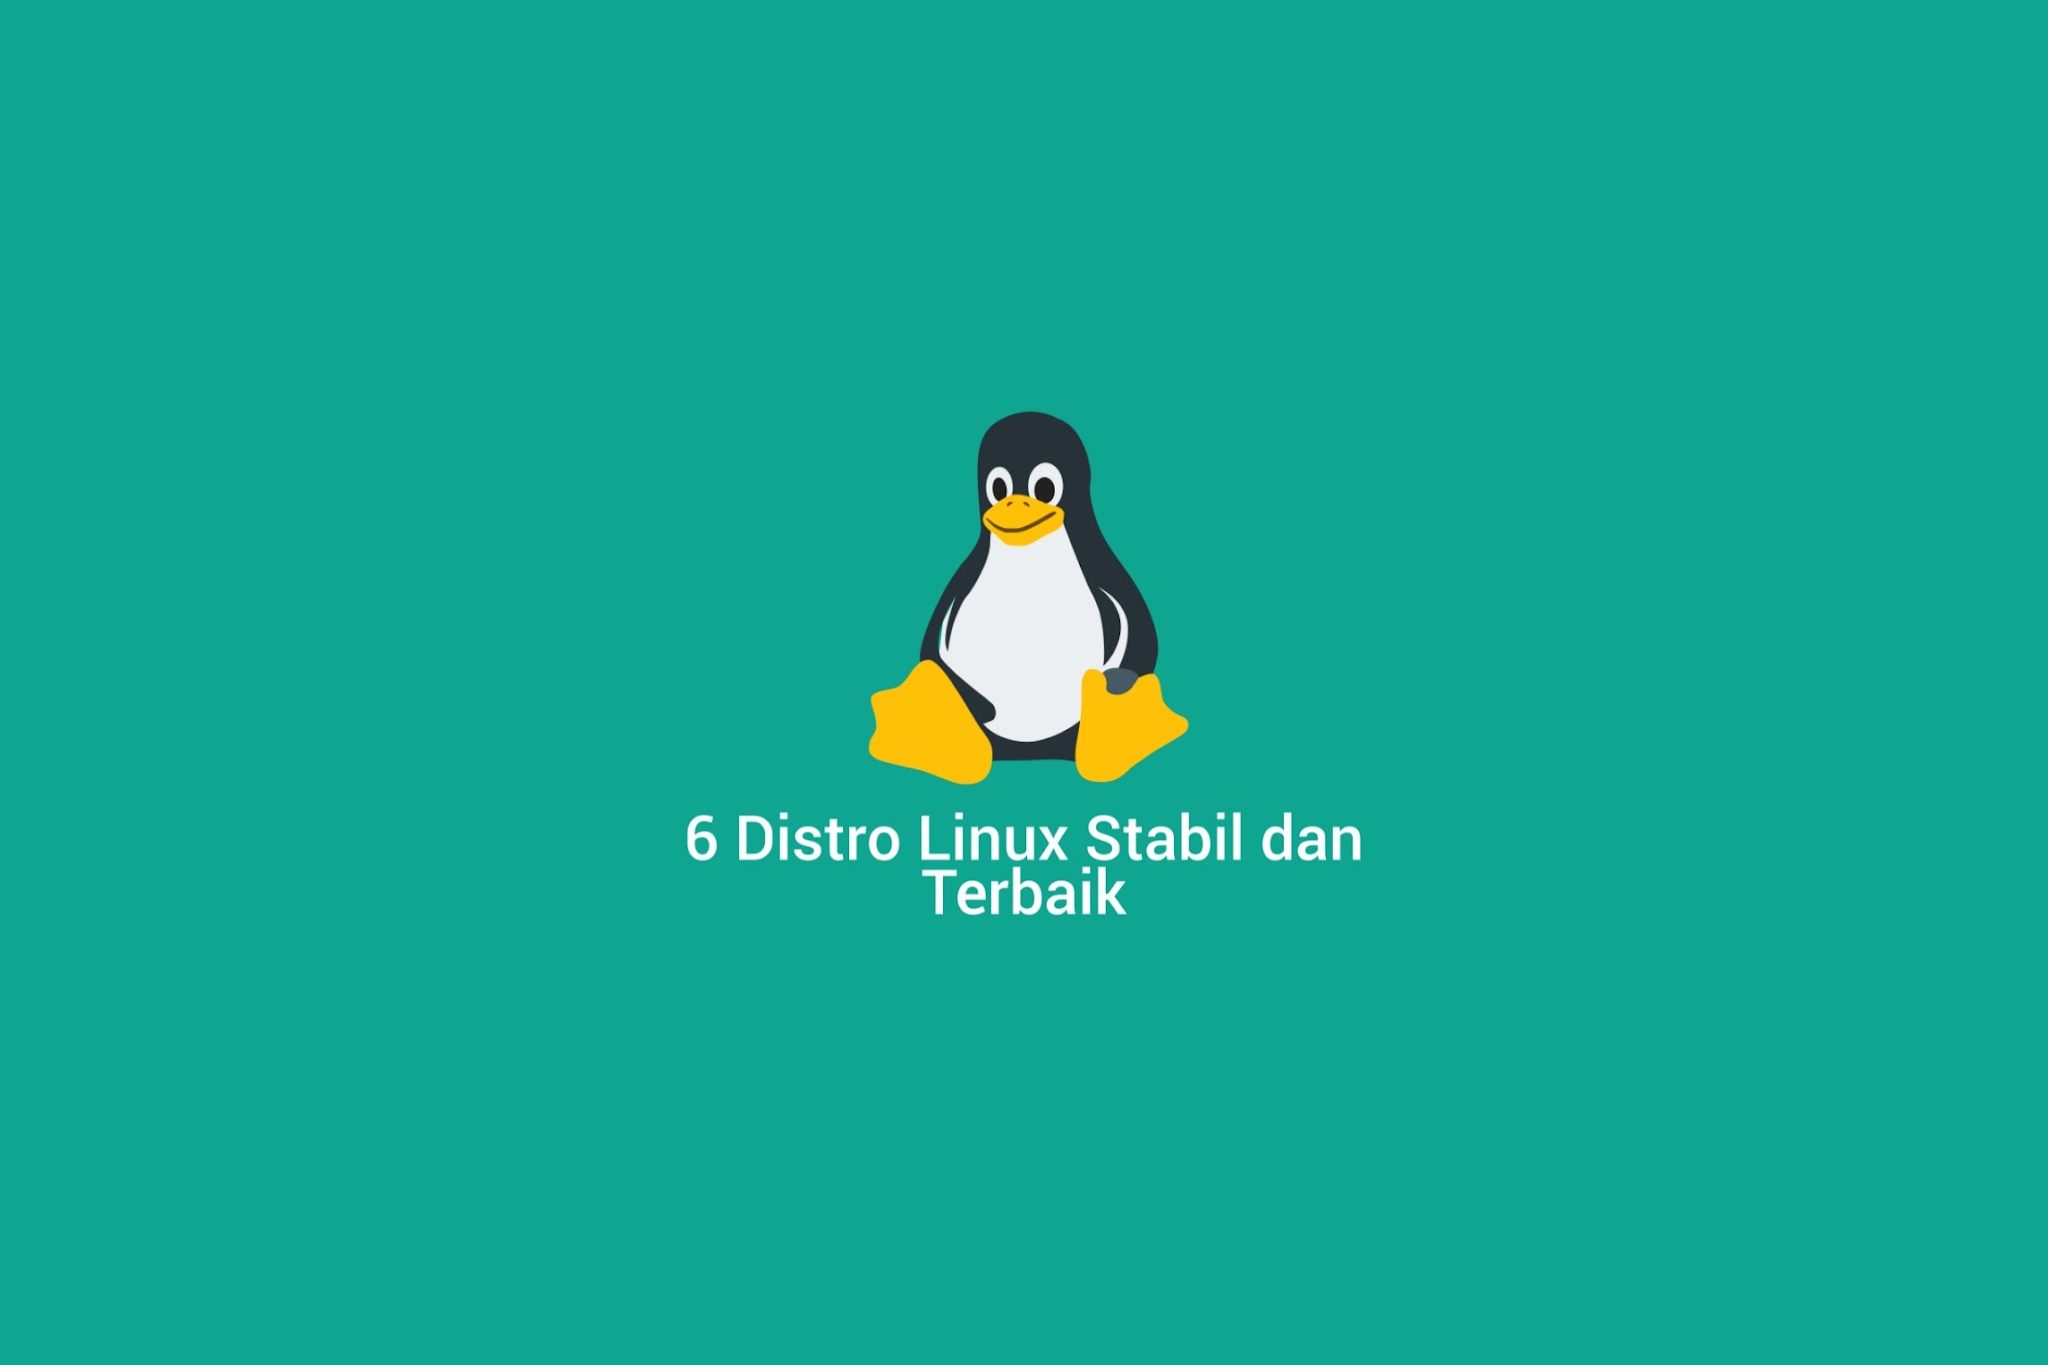 6 Distro Linux Stabil dan Terbaik untuk Pengguna Laptop dan PC